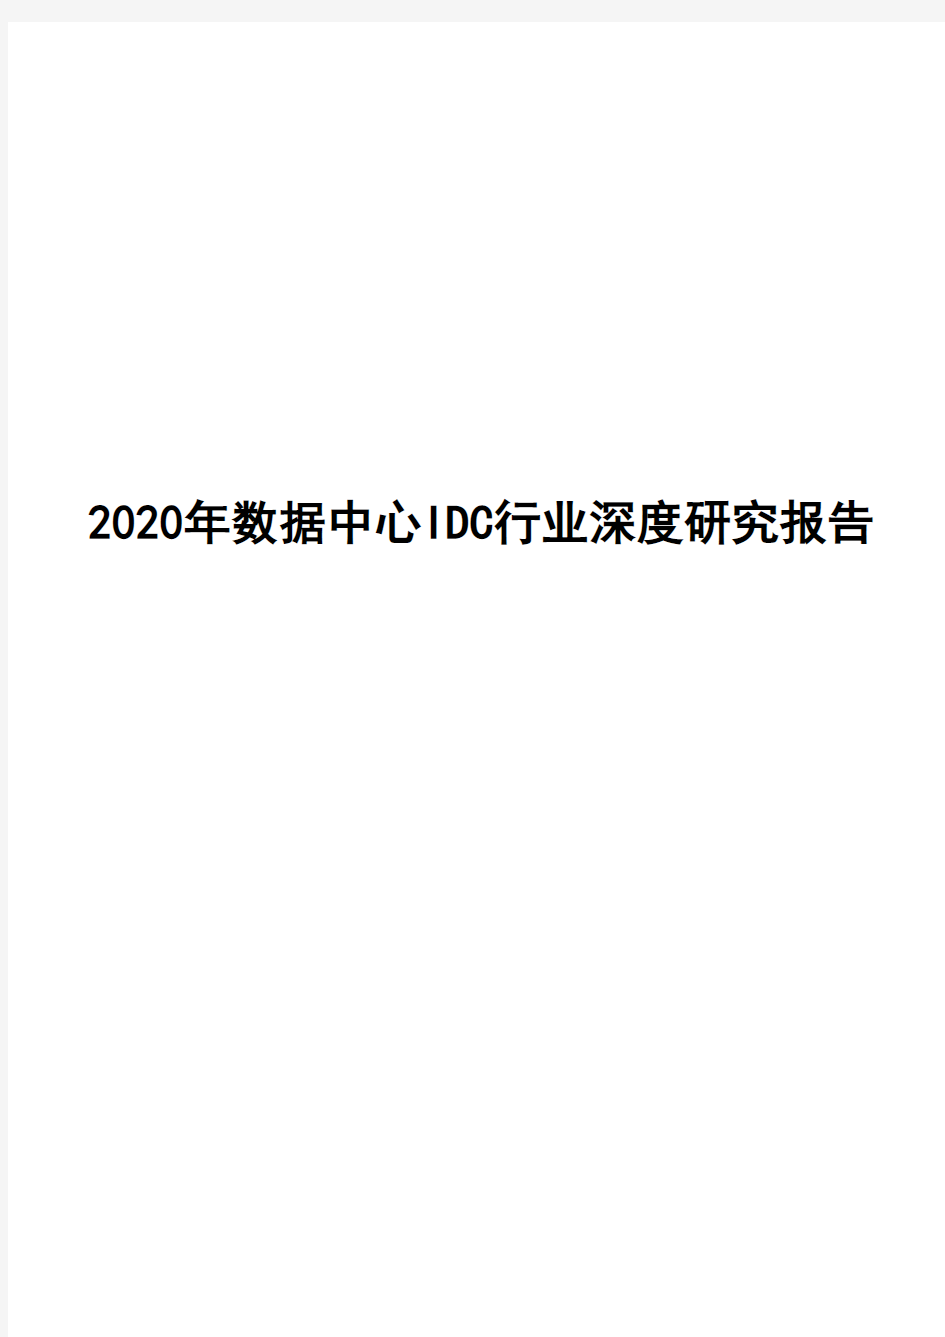 2020年数据中心IDC行业深度研究报告